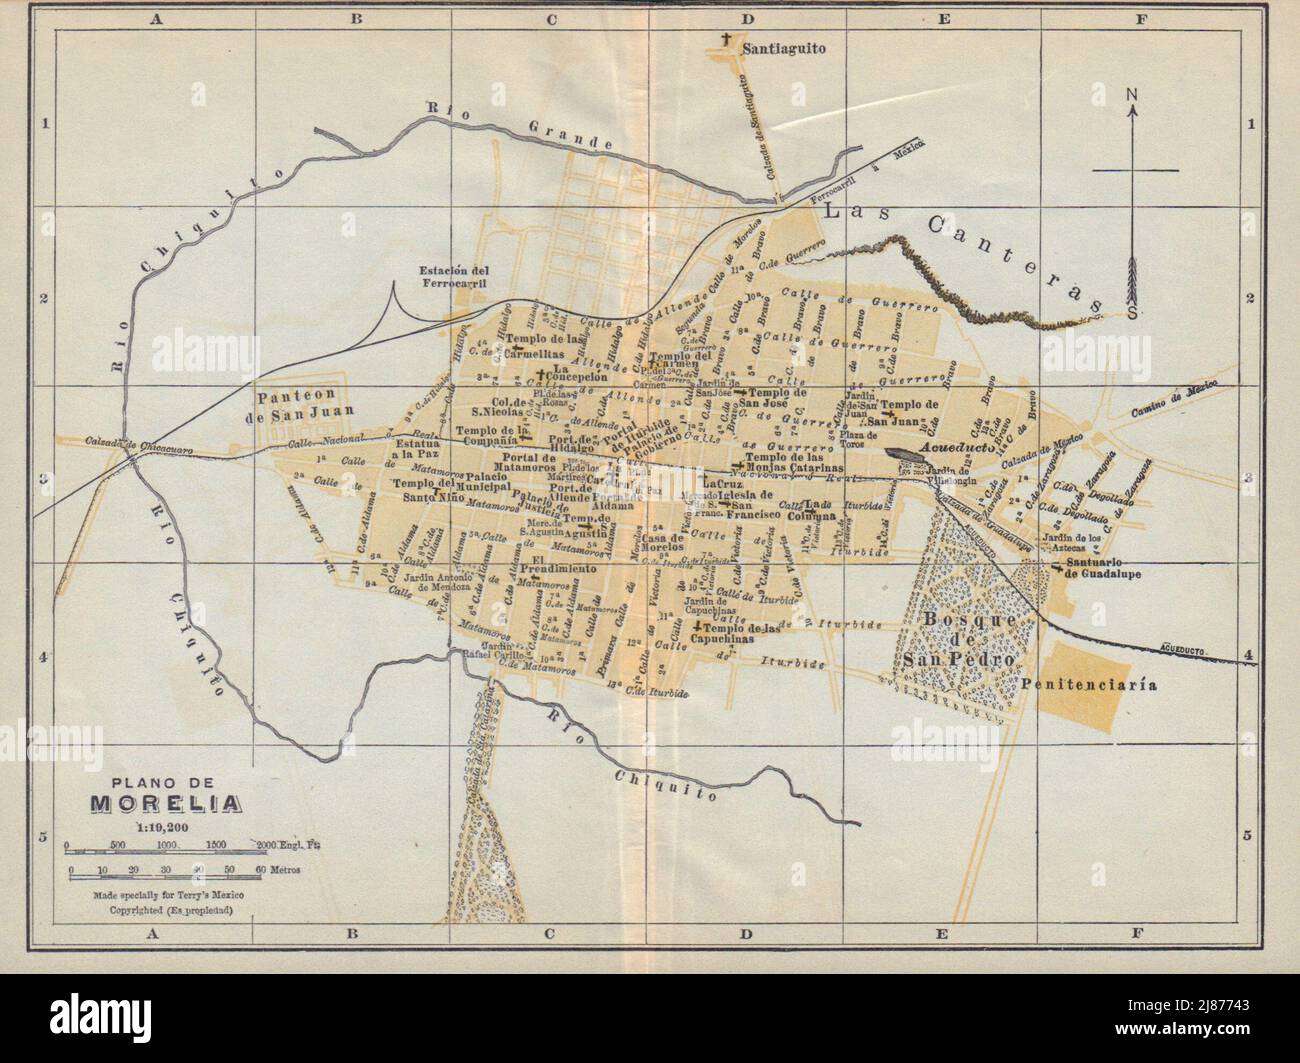 Plano de MORELIA, Mexico. Mapa de la ciudad. City/town plan 1938 old Stock Photo